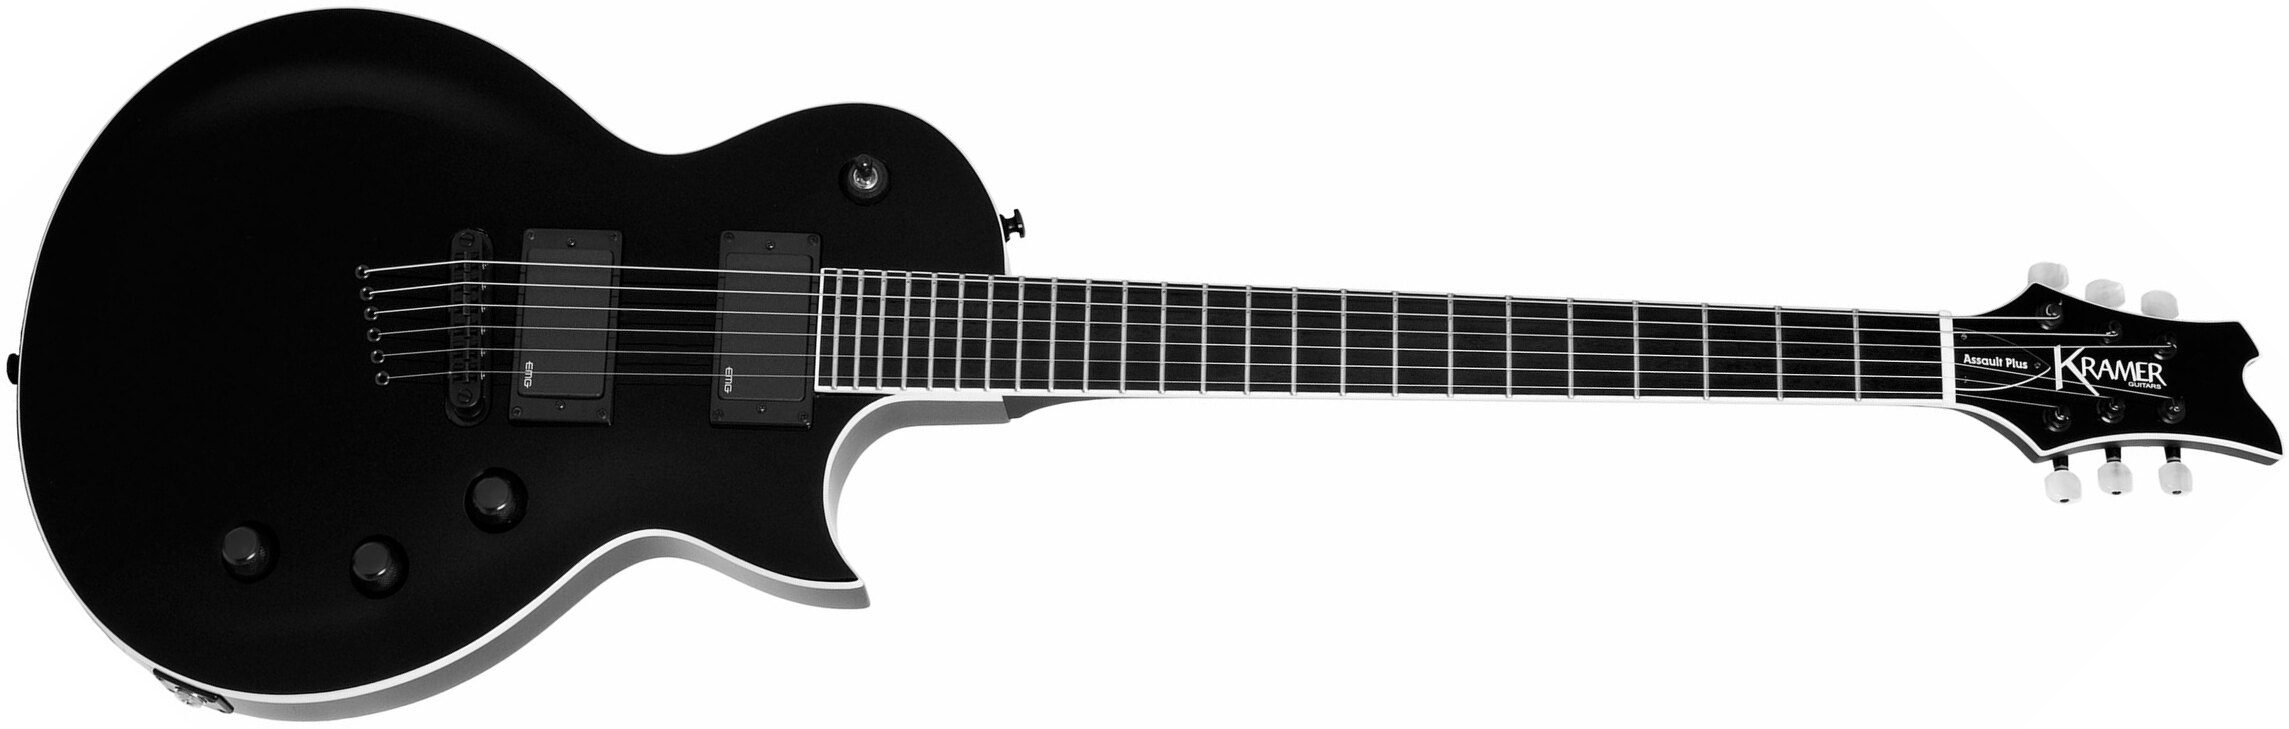 Kramer Assault Plus 2h Emg Ht Eb - Black - Enkel gesneden elektrische gitaar - Main picture